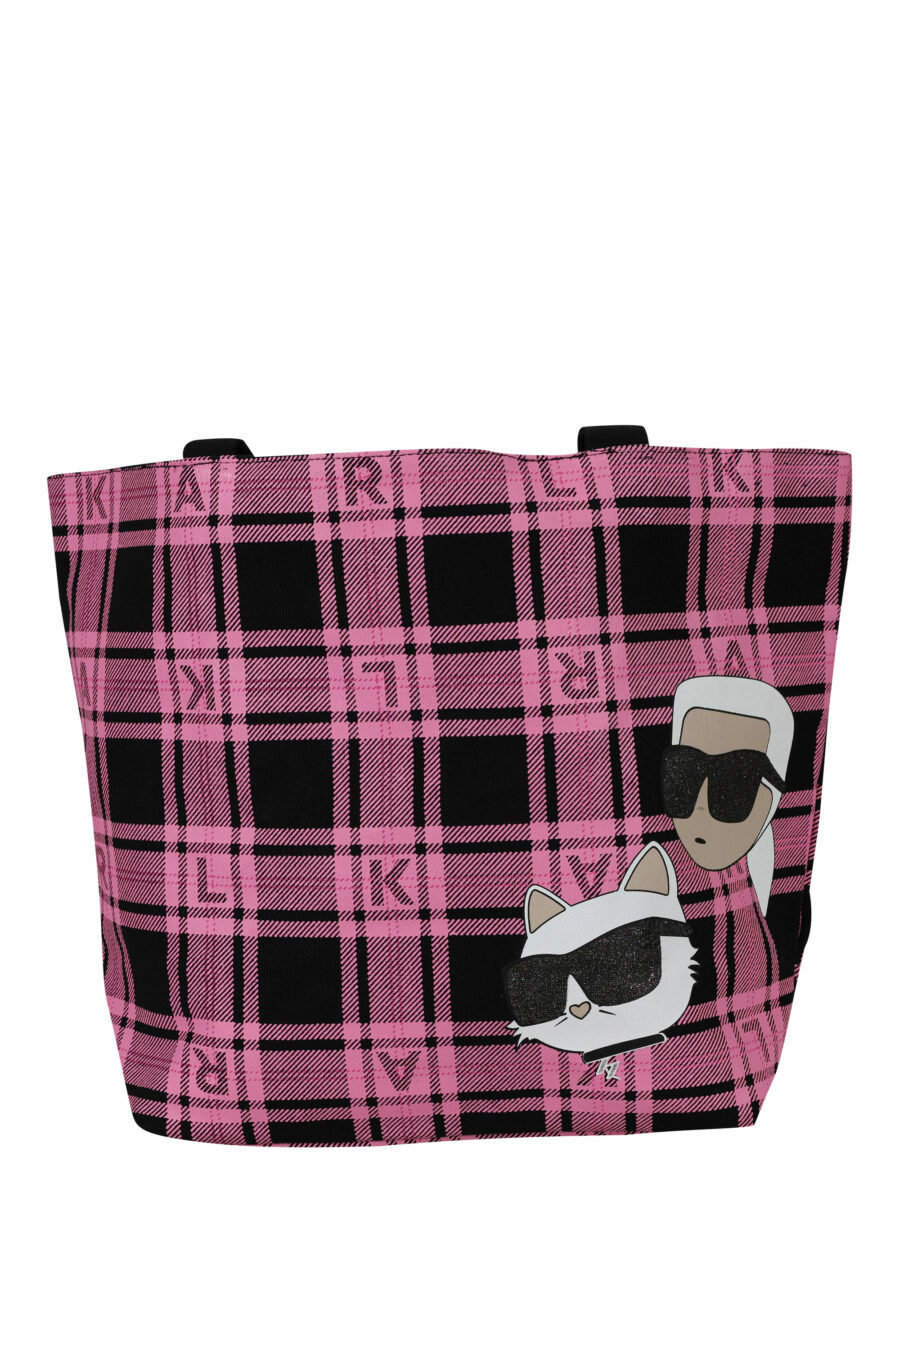 Tote bag reversible negro y rosa con maxilogo "choupette y karl" - 8720744676225